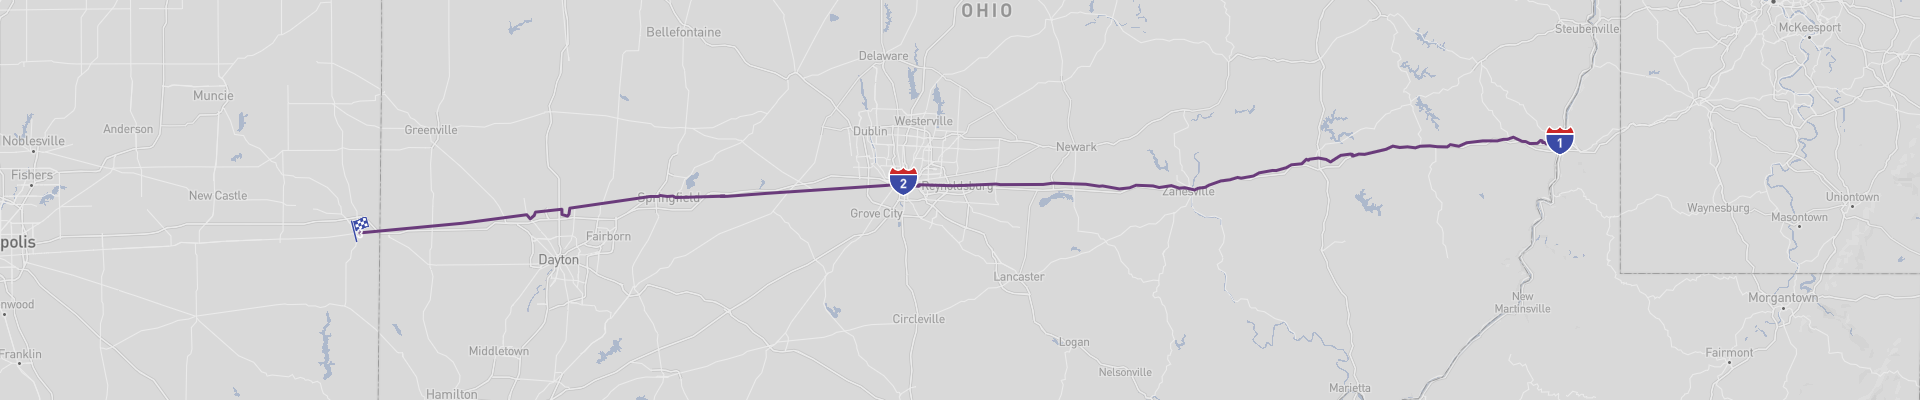 Itinéraire Ohio  US 40  